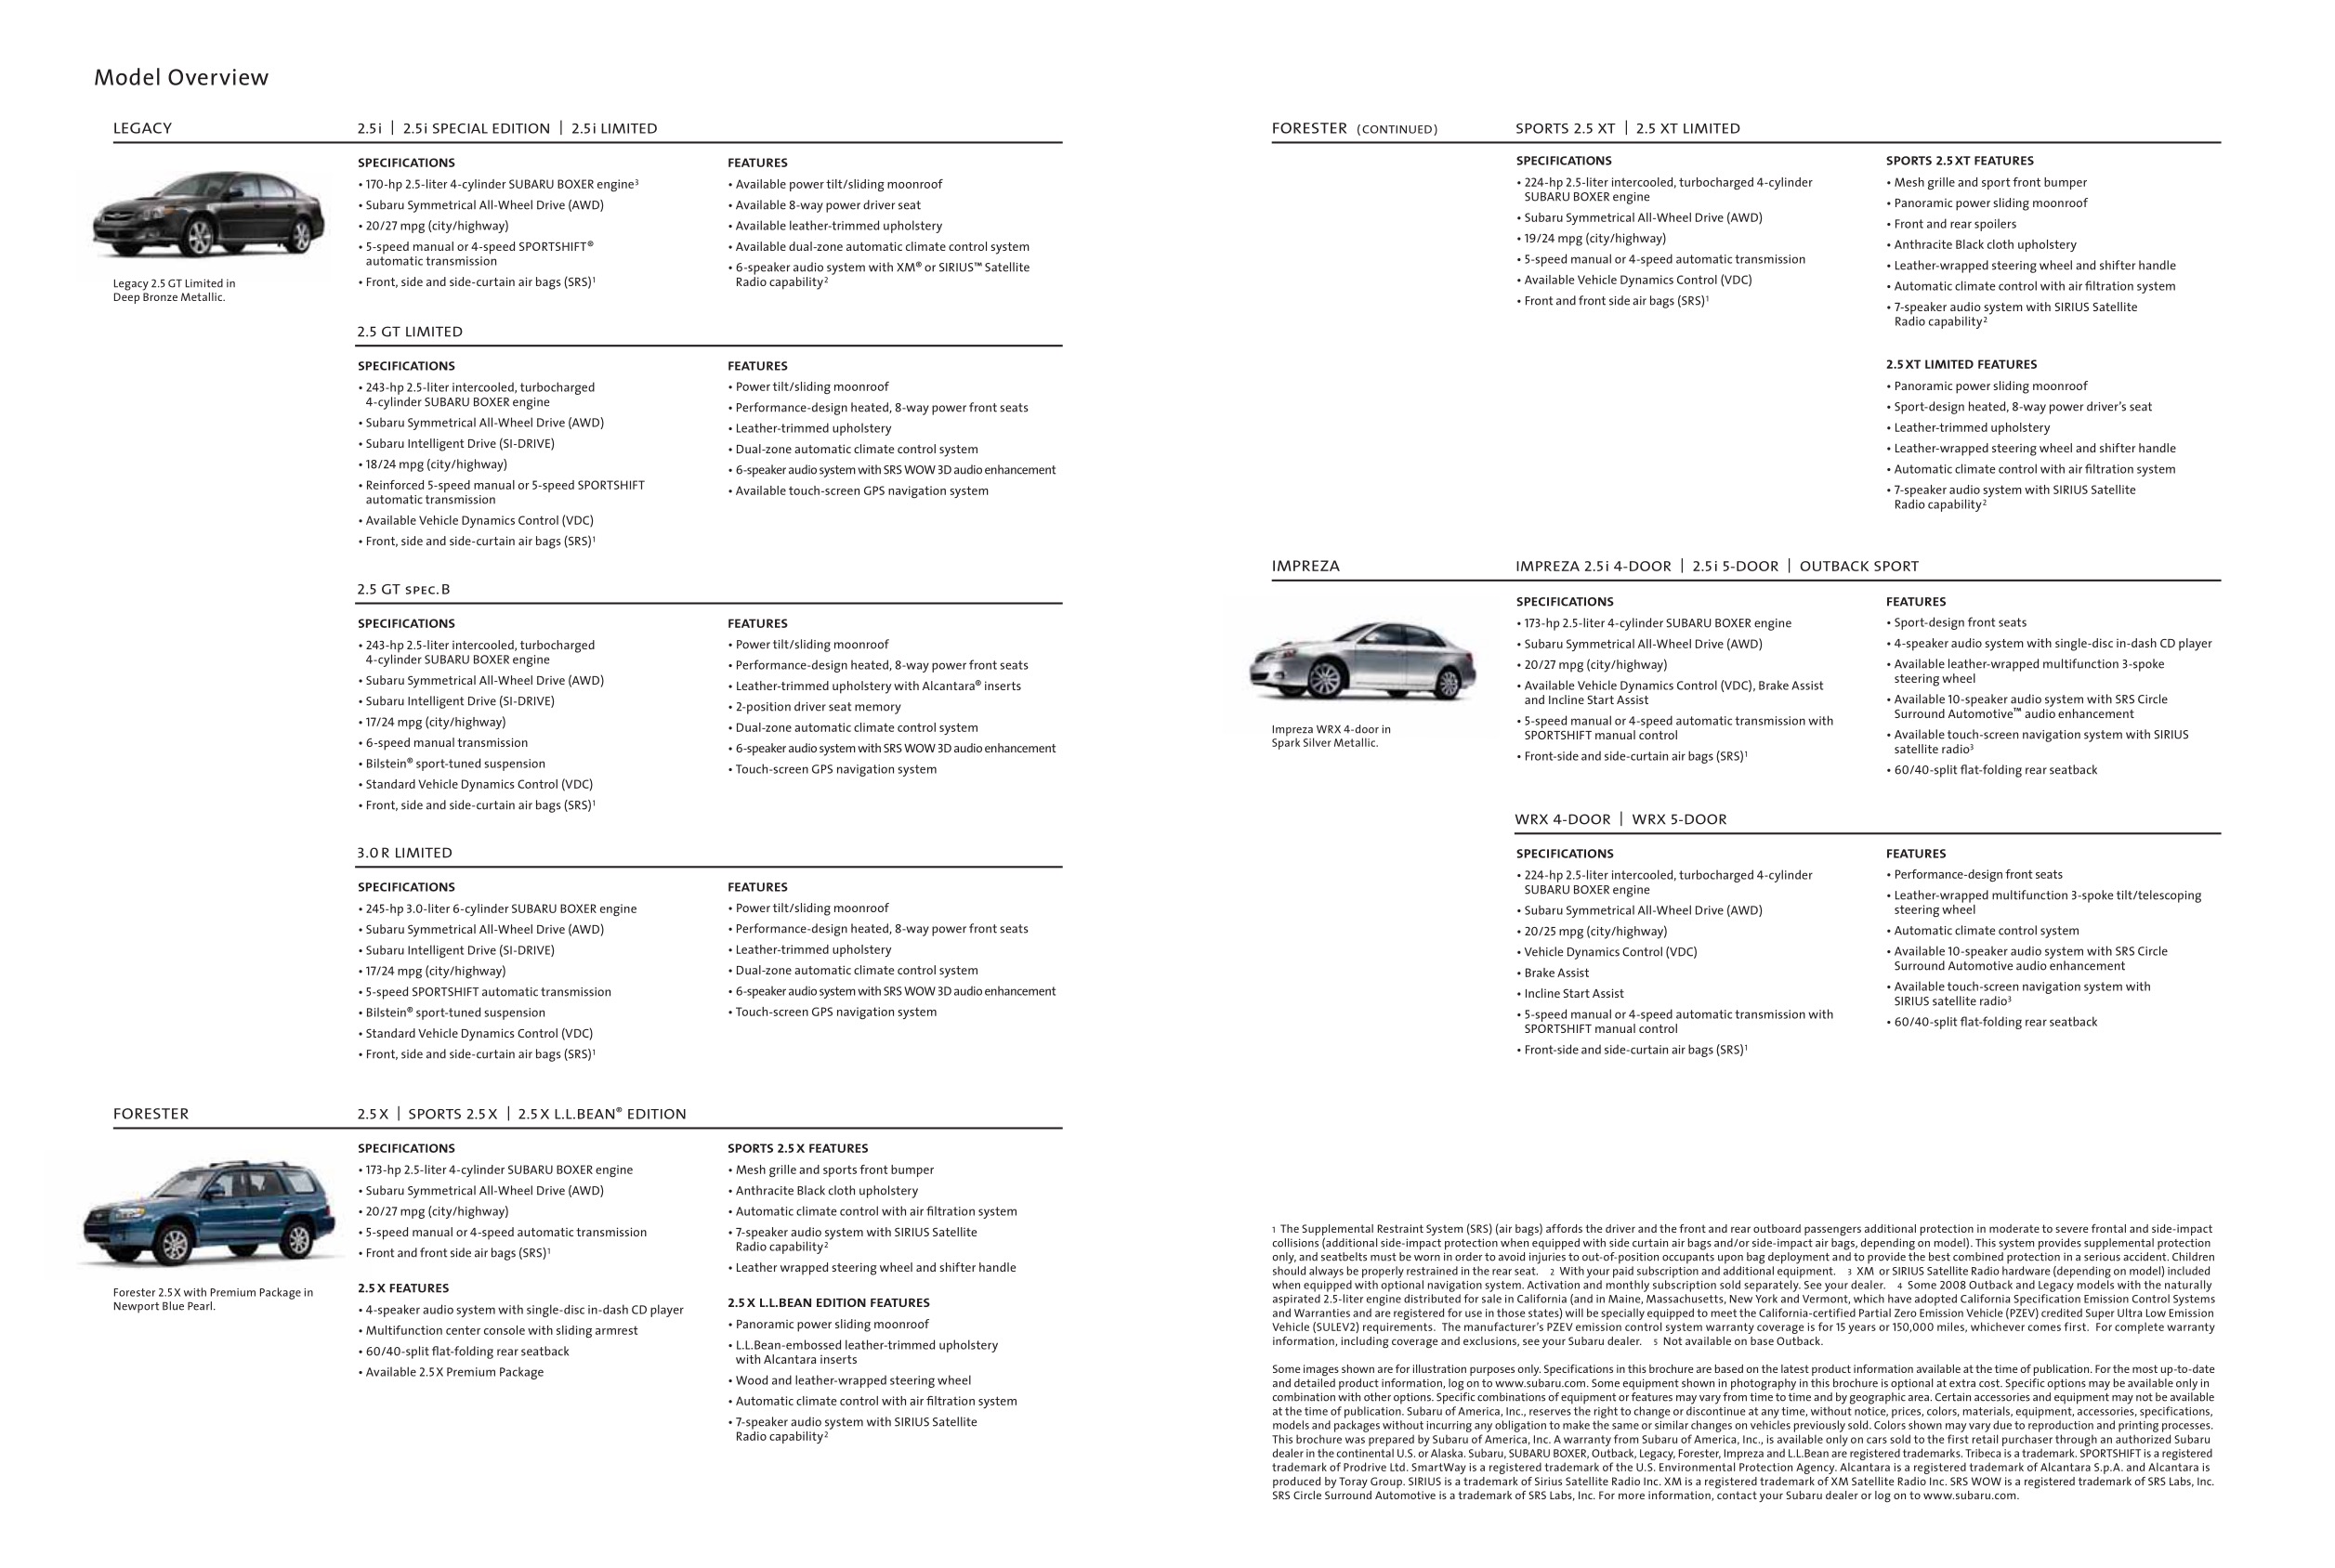 2008 Subaru Brochure Page 19